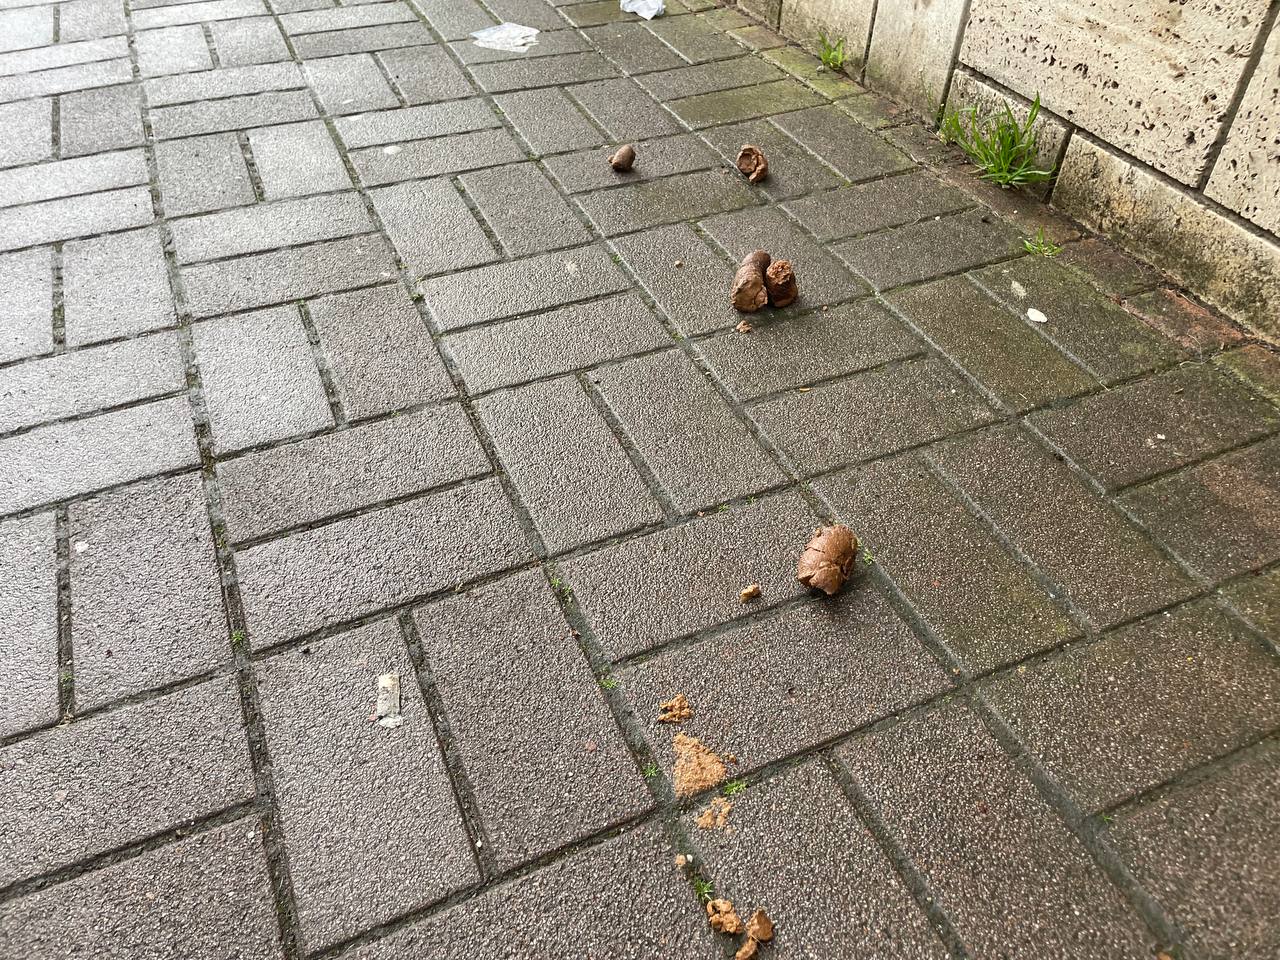 Una delle tante deiezioni canine lasciate sul marciapiede